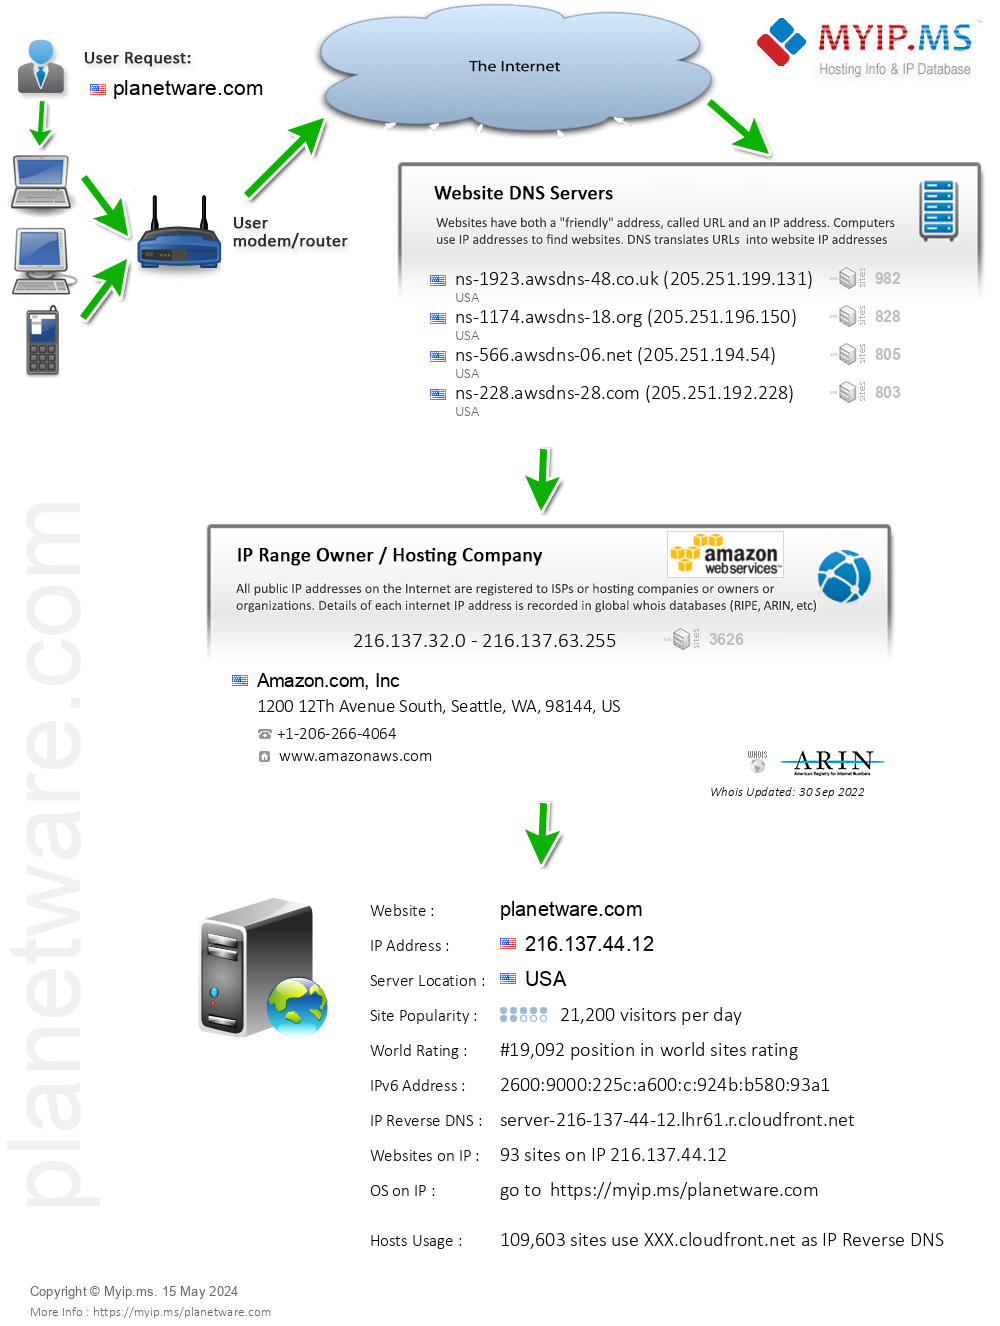 Planetware.com - Website Hosting Visual IP Diagram